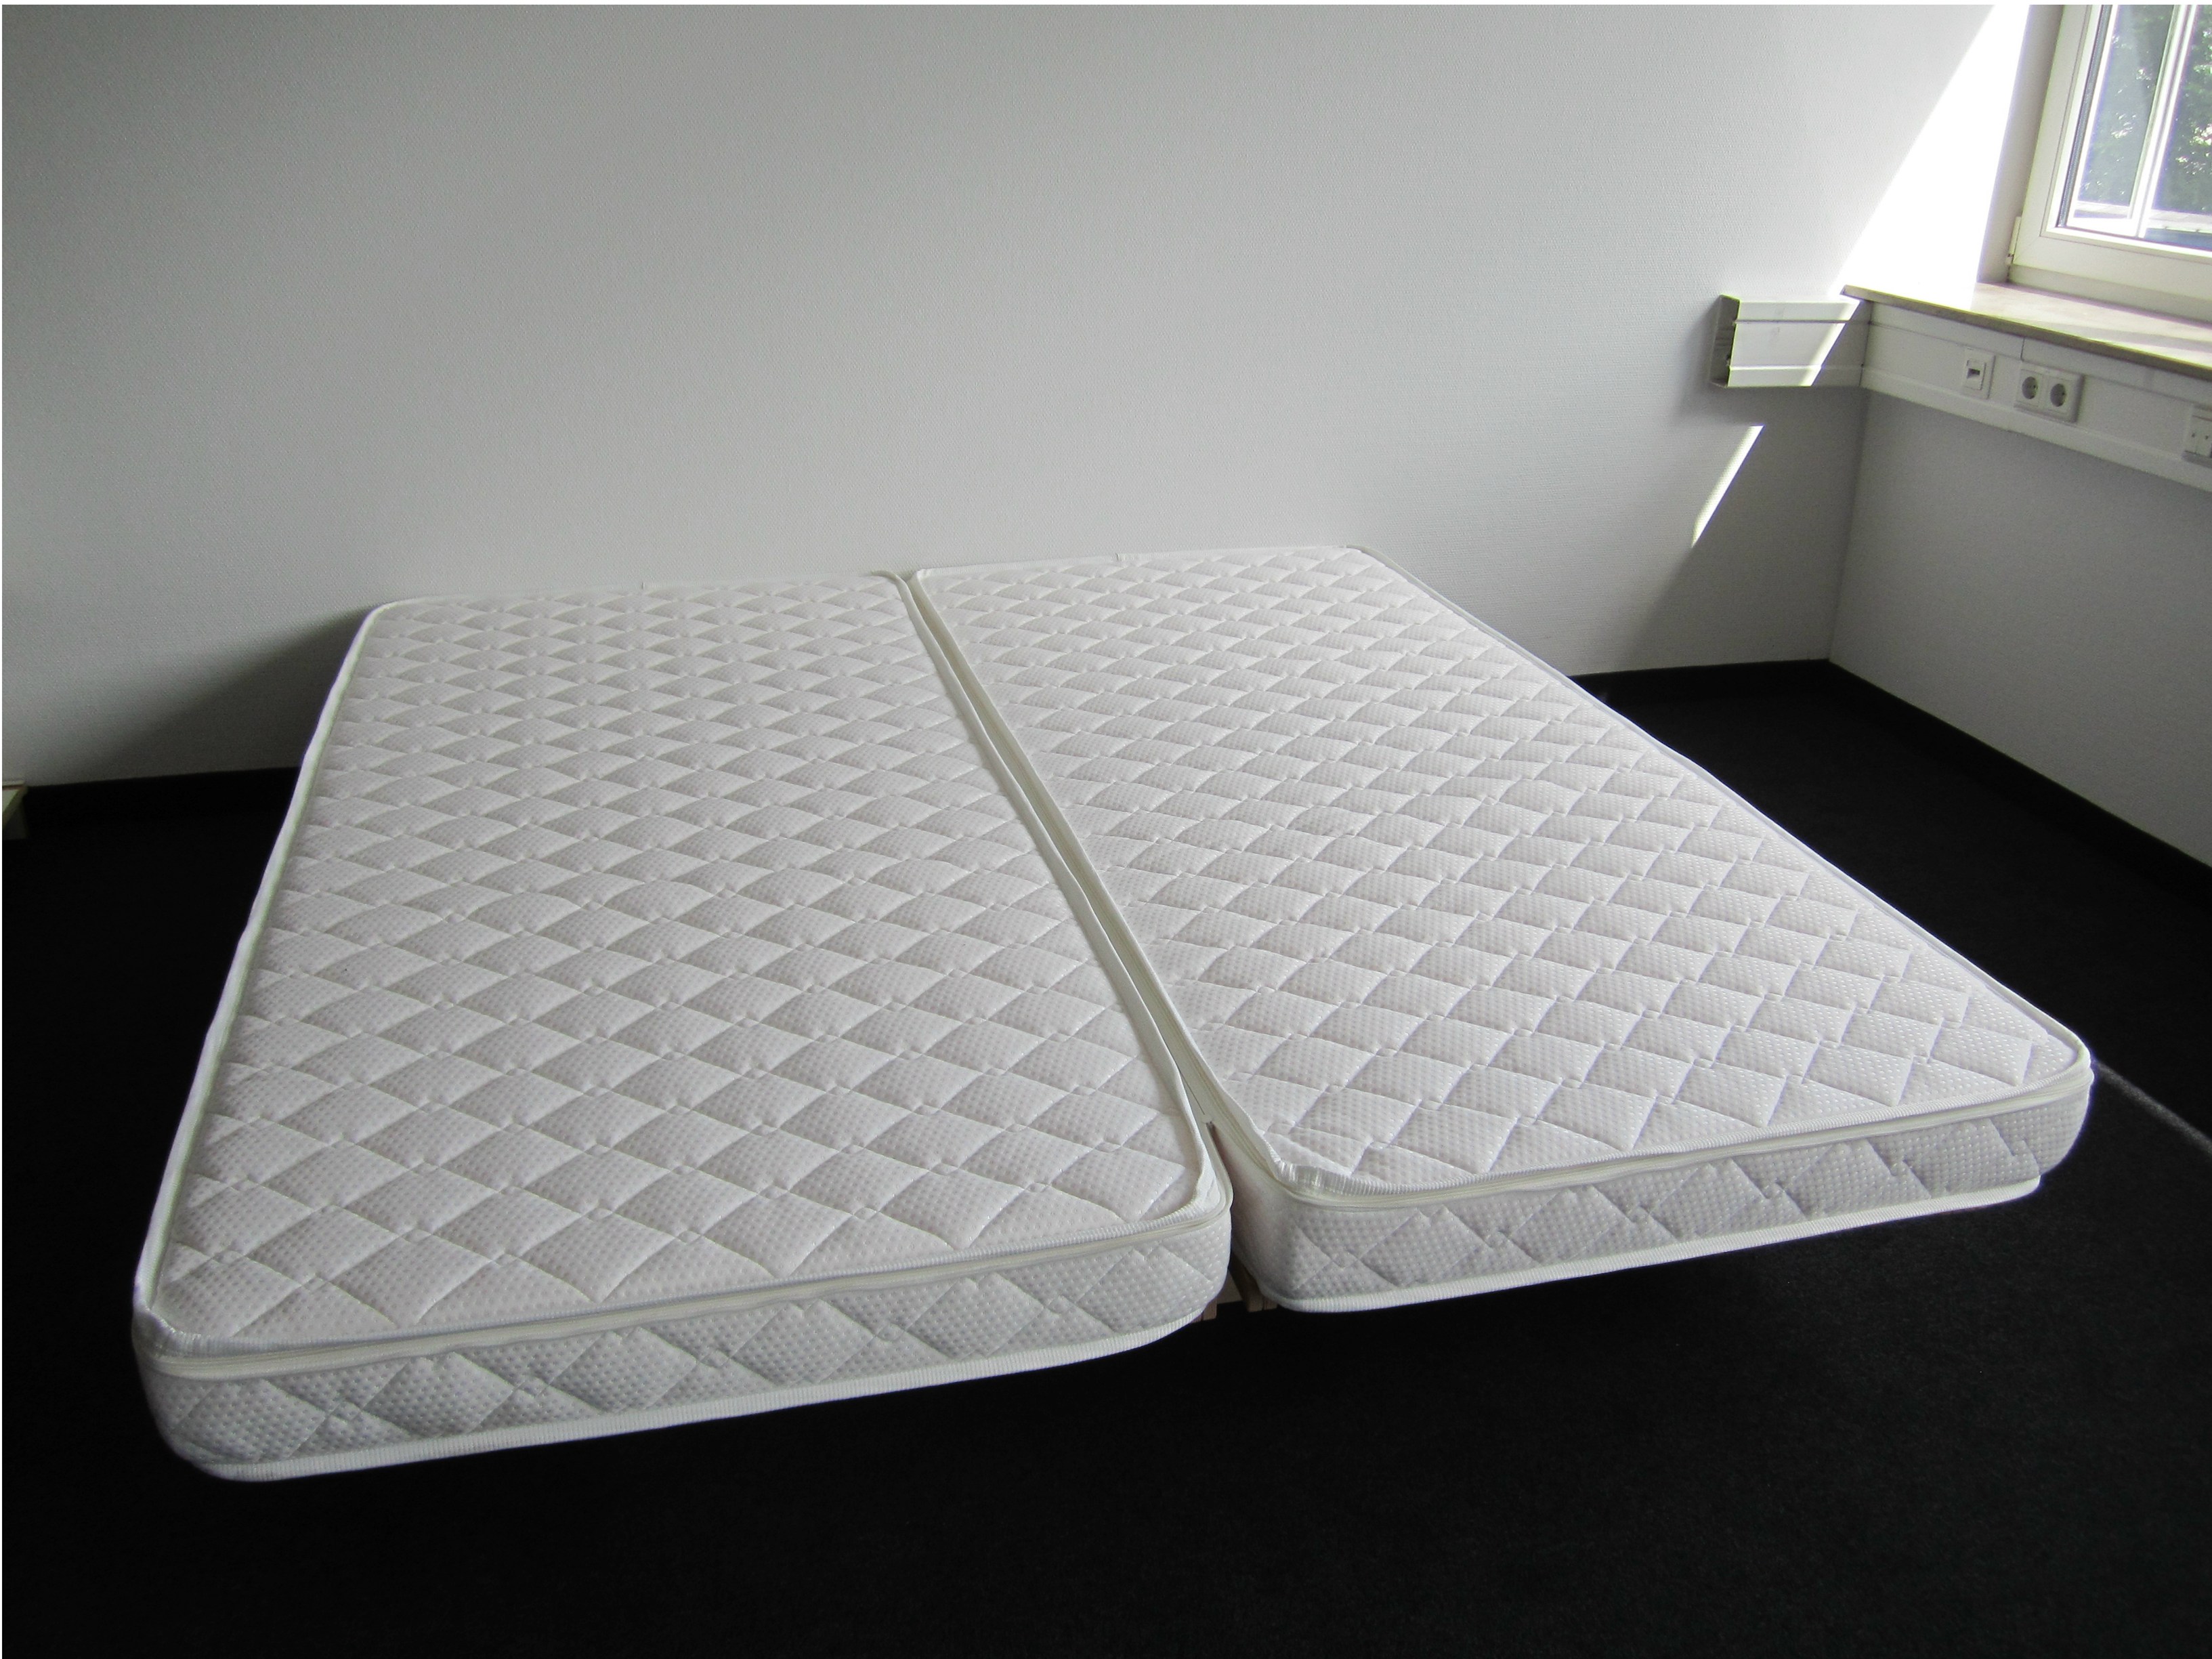 is urethane bed mattress